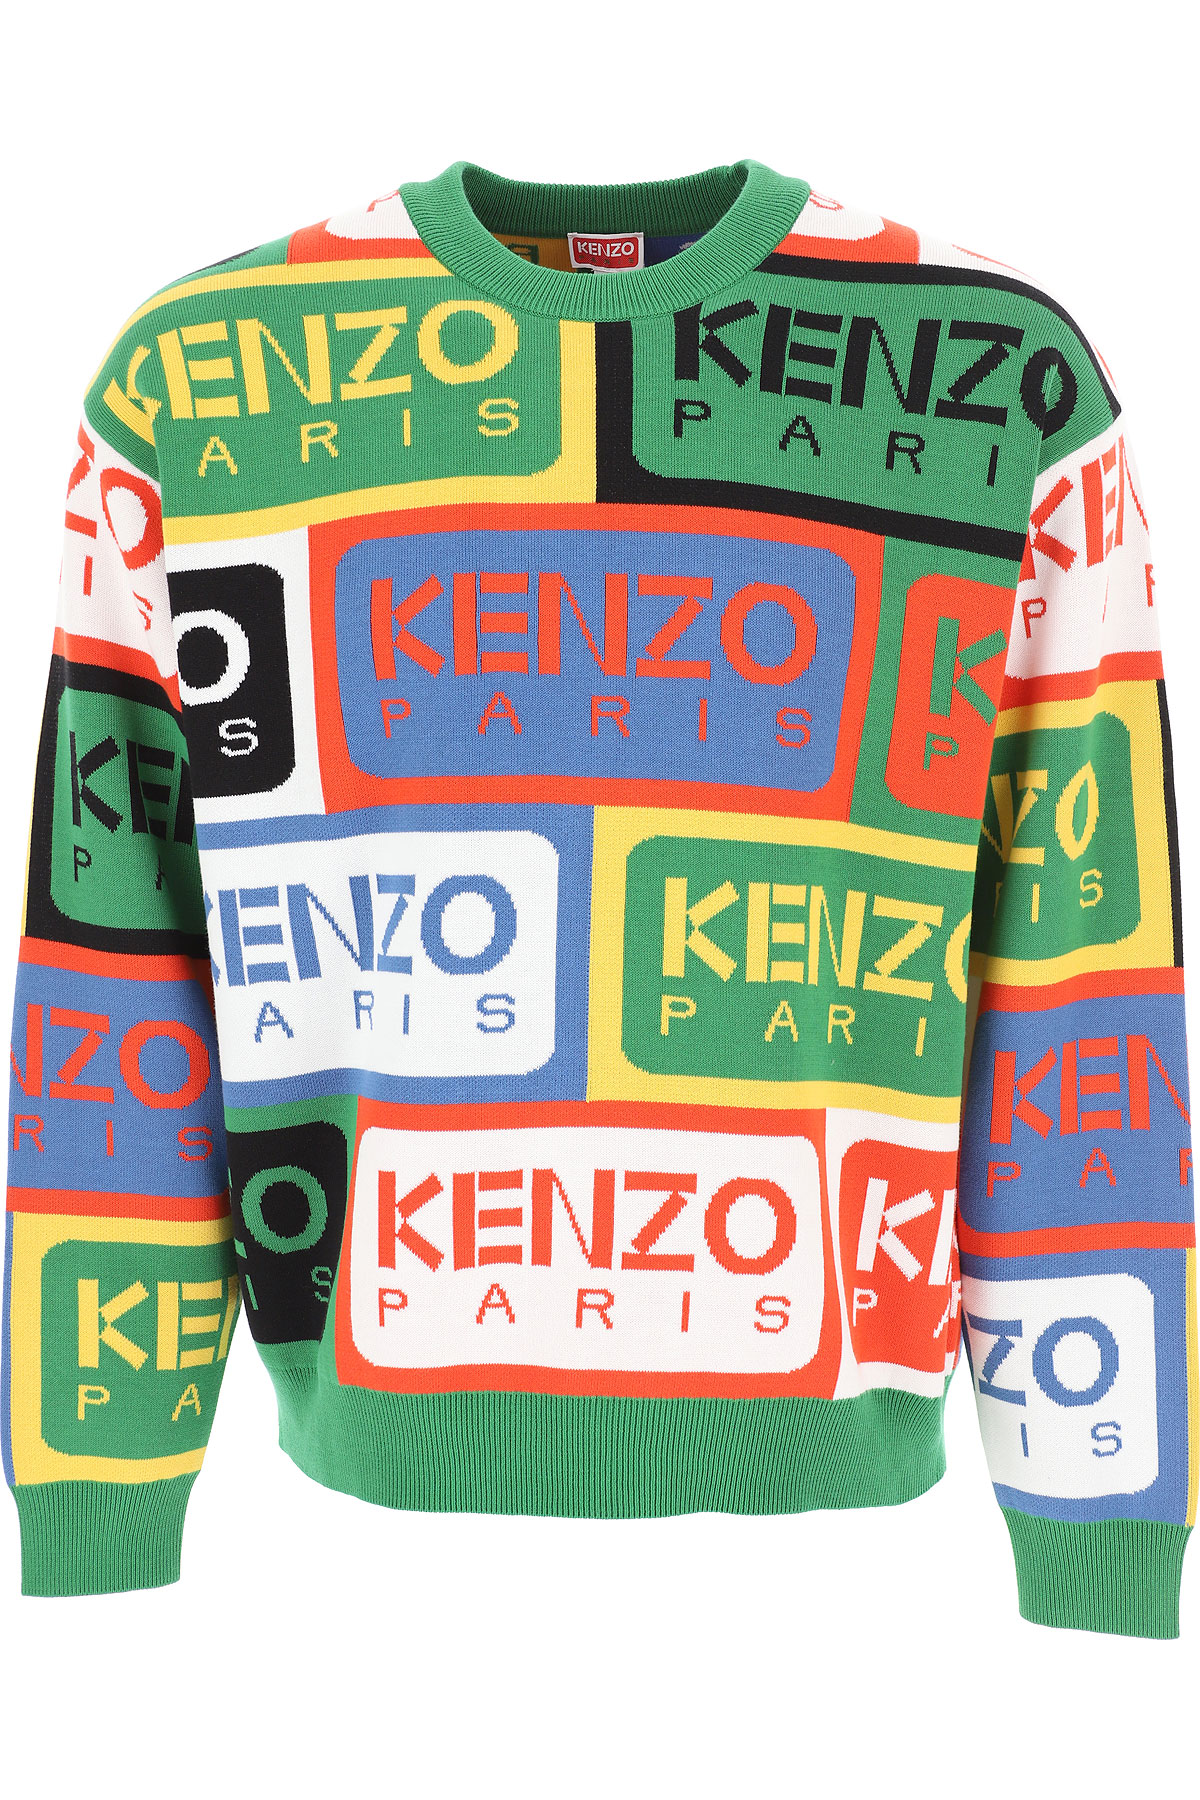 Kenzo Abbigliamento Uomo